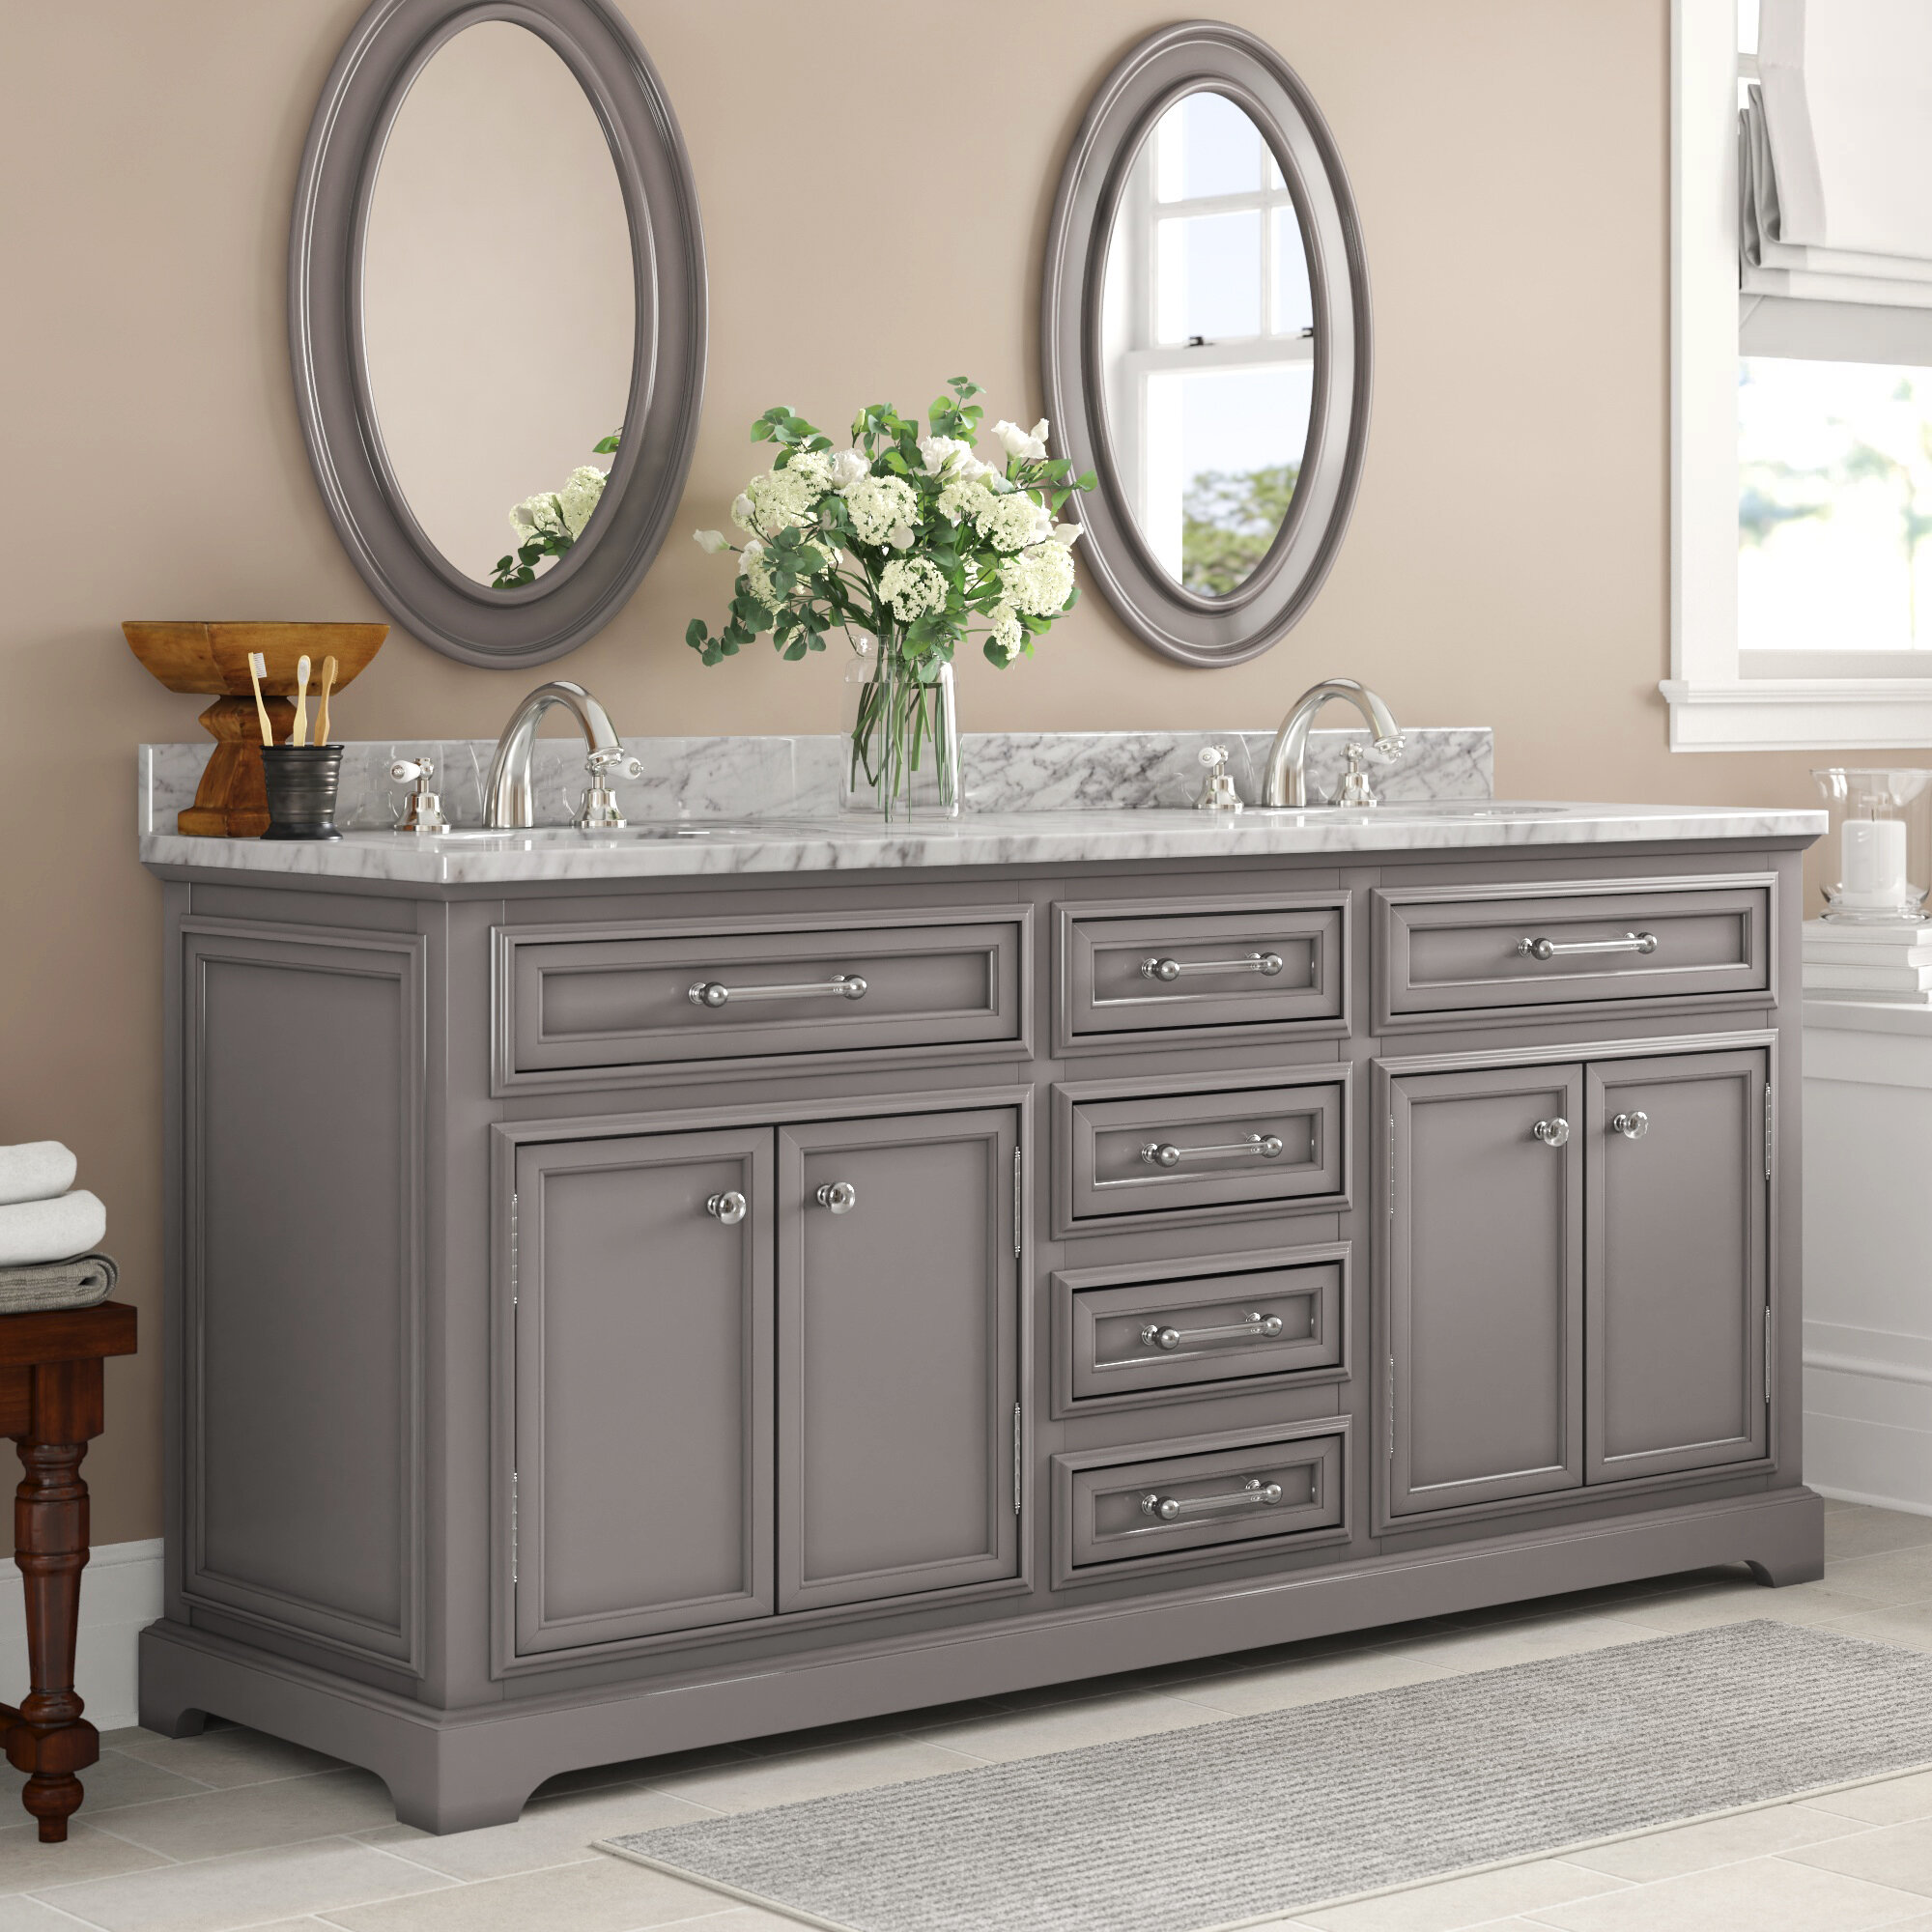 Three Posts Bergin 72 W Double Sink Bathroom Vanity Set With Mirror Reviews Wayfair